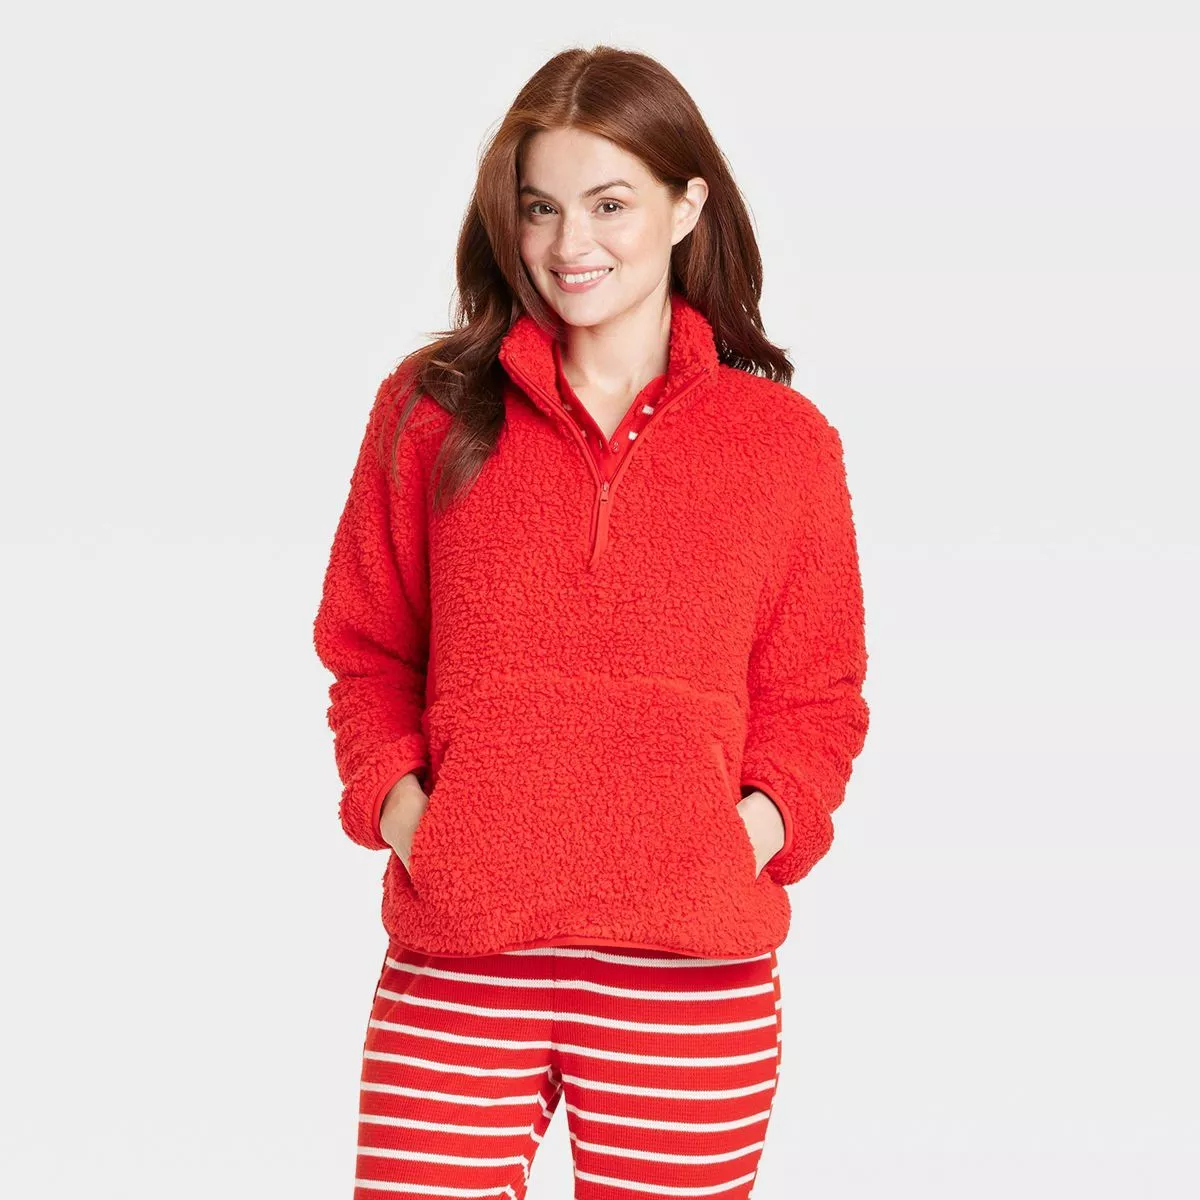 Women's Matching Family Thermal Pajama Pants - Wondershop™ Gray